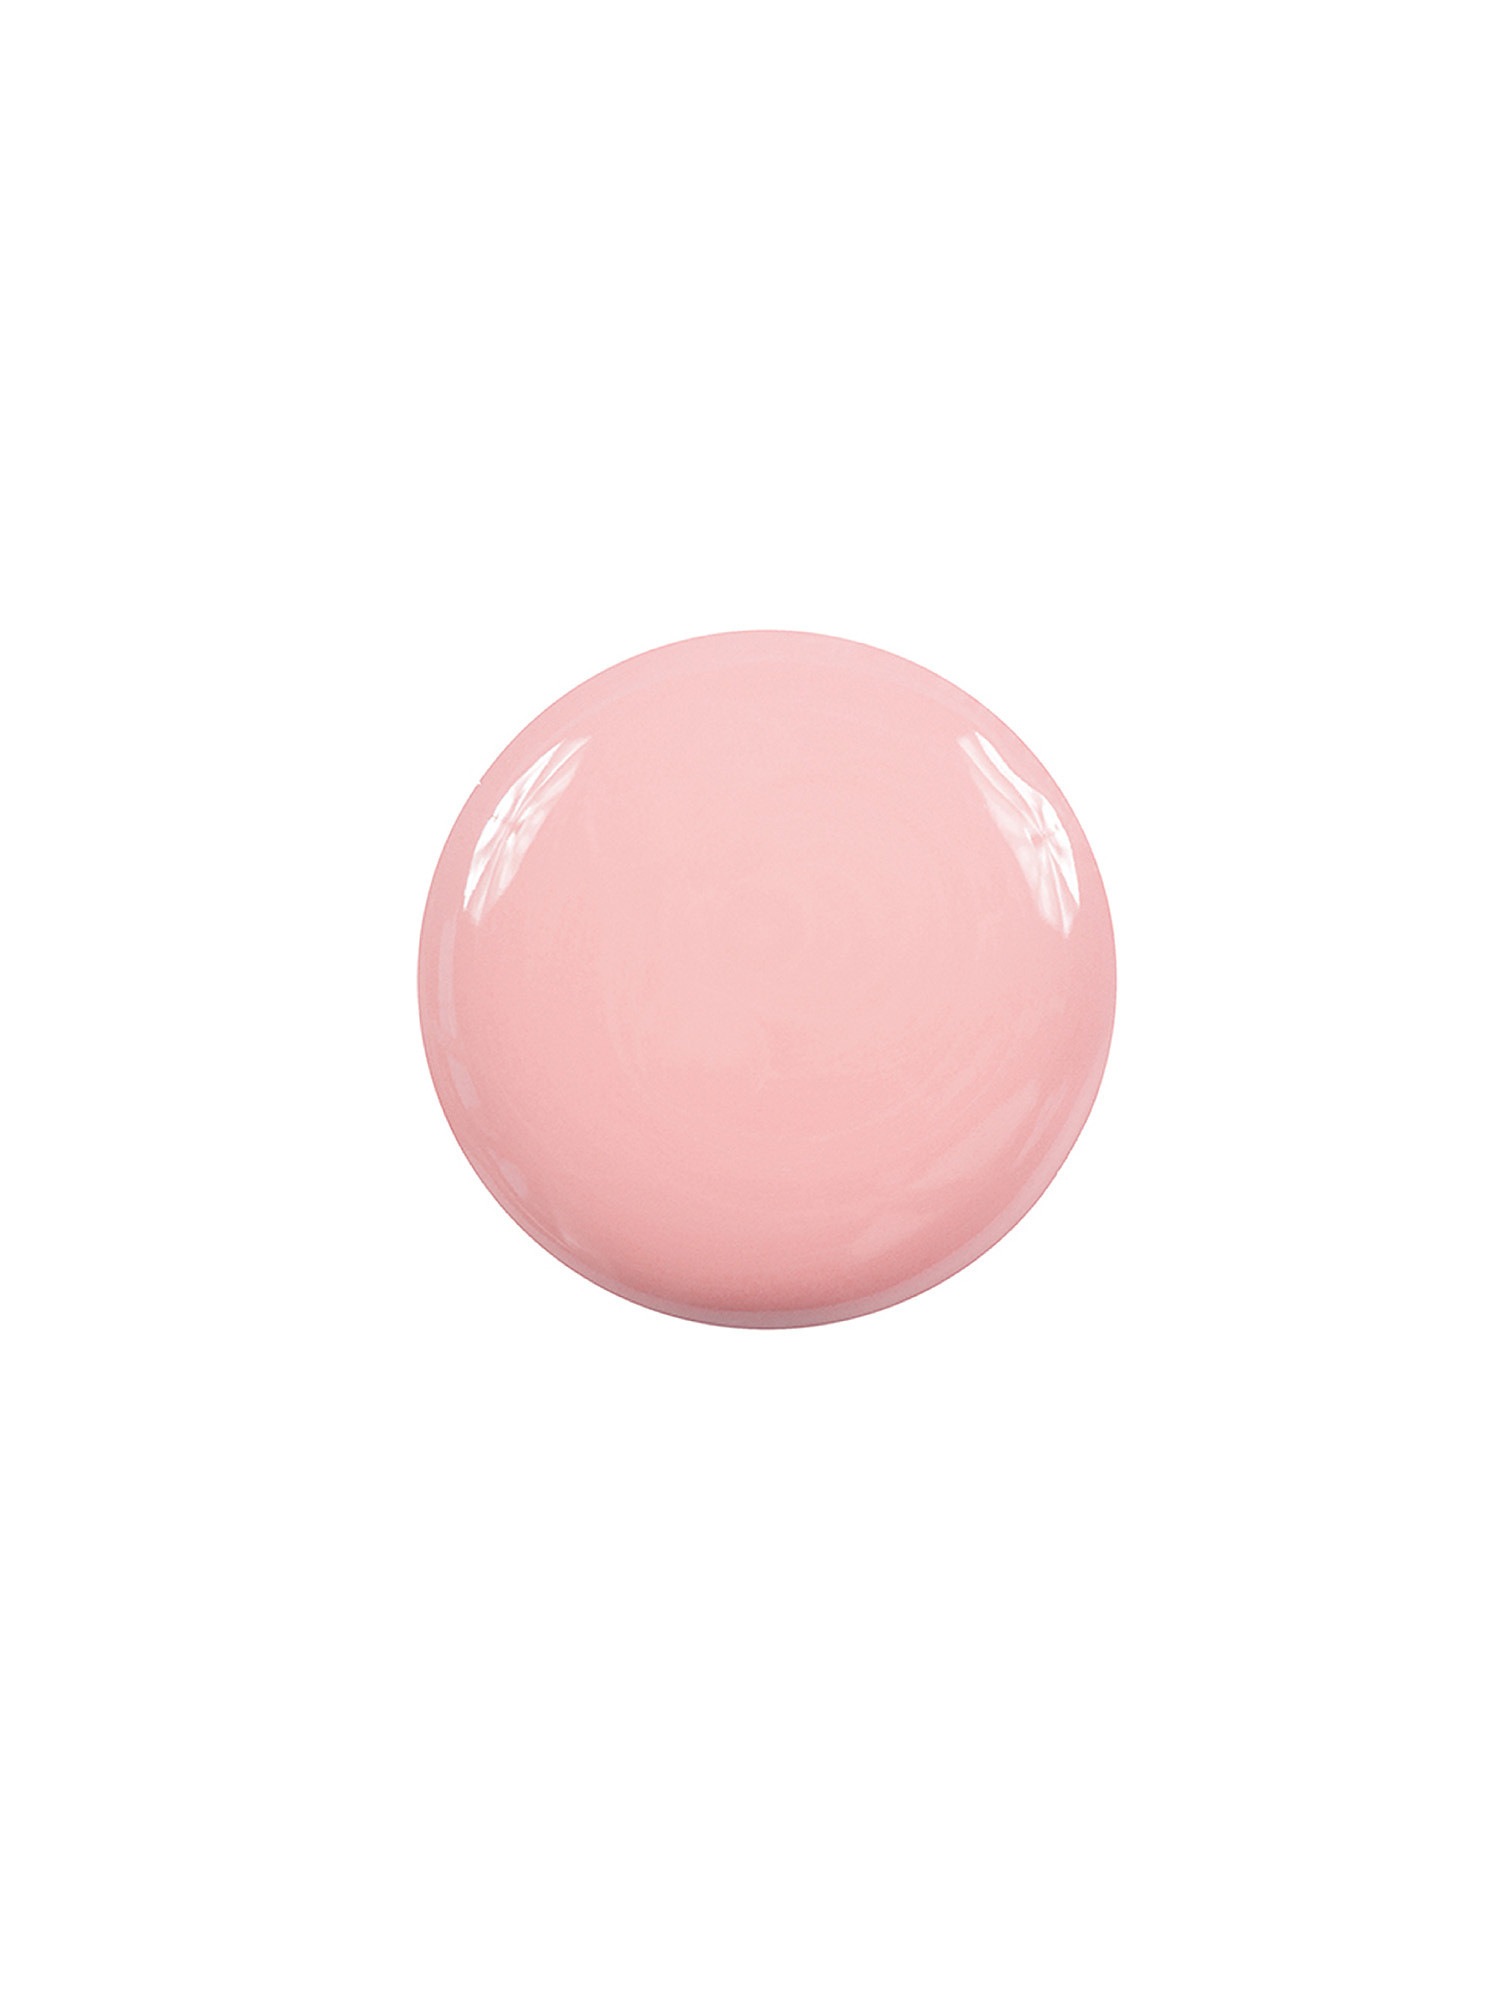 Smoothing Base-Filler, Light Pink, large image number 1